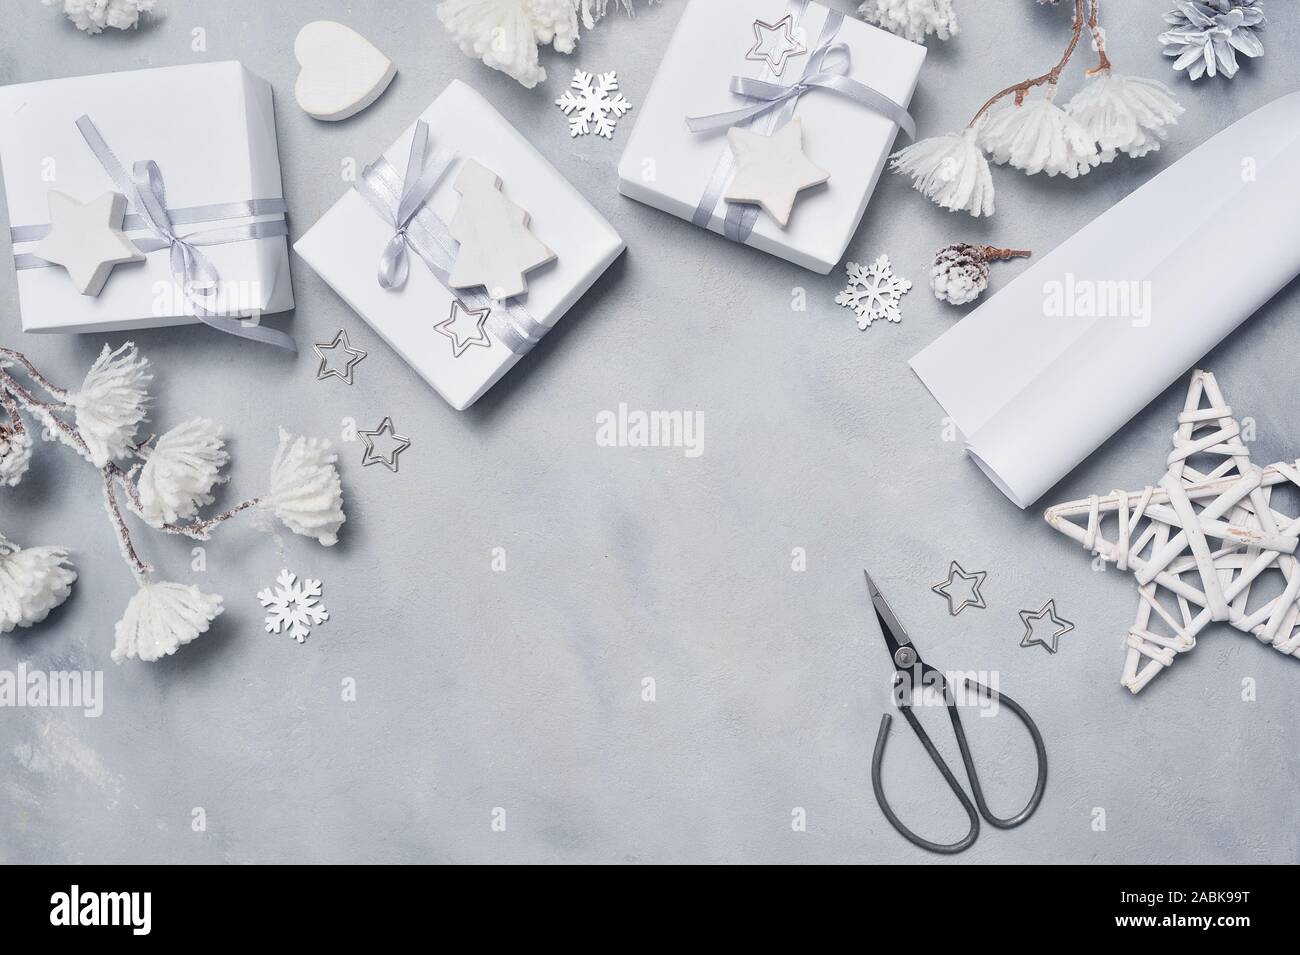 La conception de la frontière une carte de vœux de Noël avec les cadeaux de Noël, des ciseaux, des cônes, des étoiles, des flocons de neige avec place pour votre texte. Décoration sur un sol en bois blanc Banque D'Images